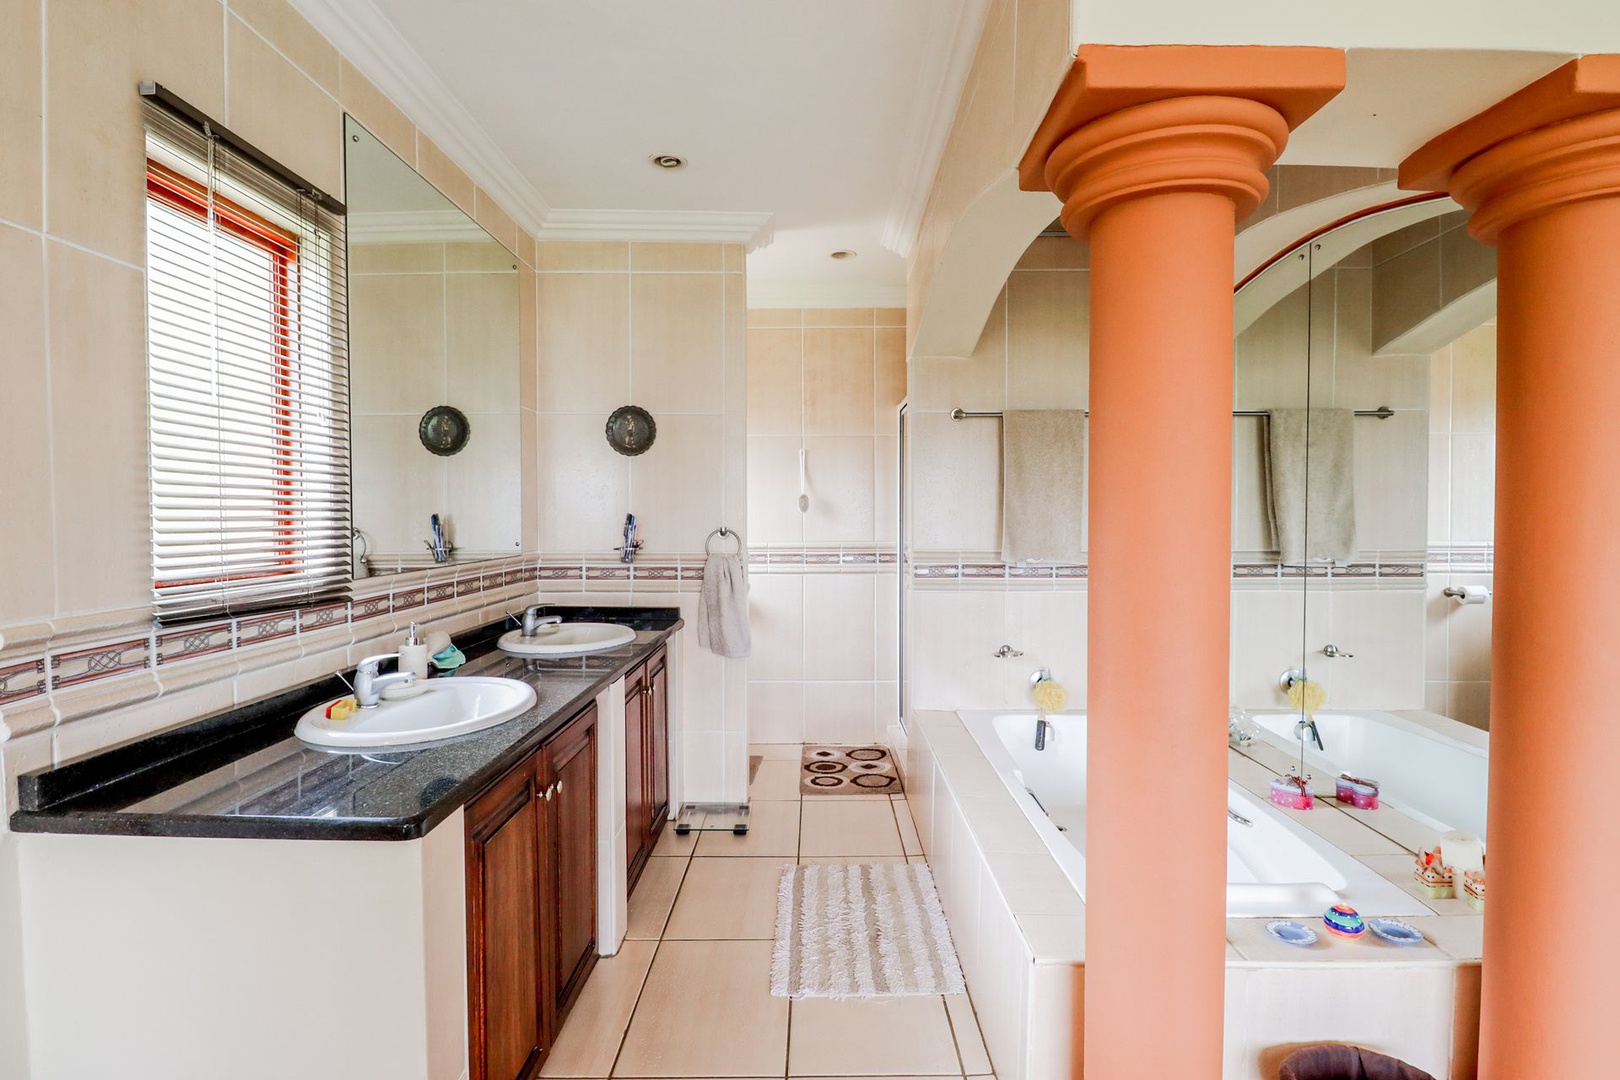 House in Kosmos Ridge - Main en-suite bathroom is spacious with beautiful fittings